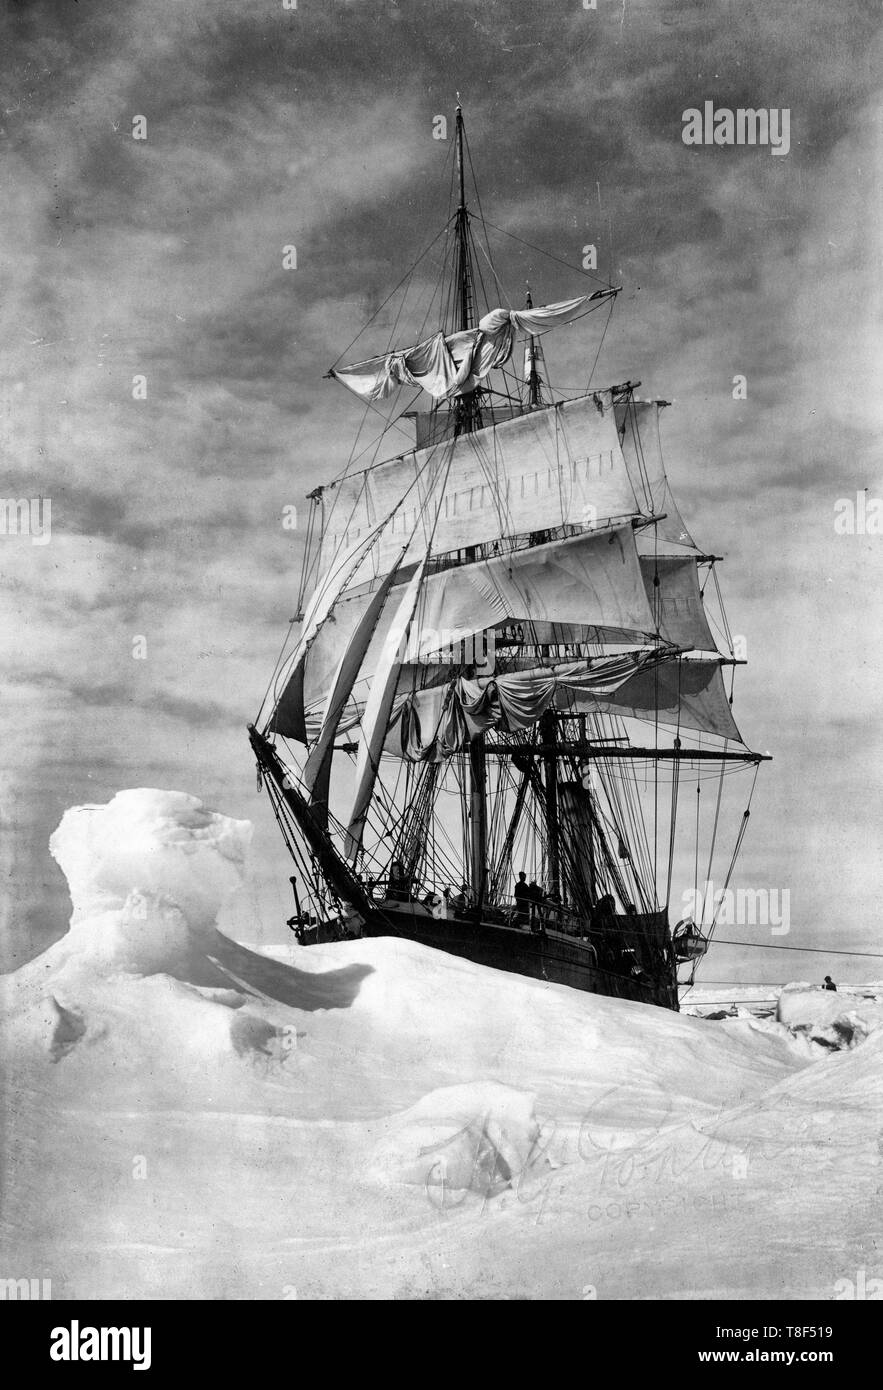 La photographie montre l'expédition Terra Nova dans les glaces au cours de la British Antarctic Expedition, vers 1910 Banque D'Images